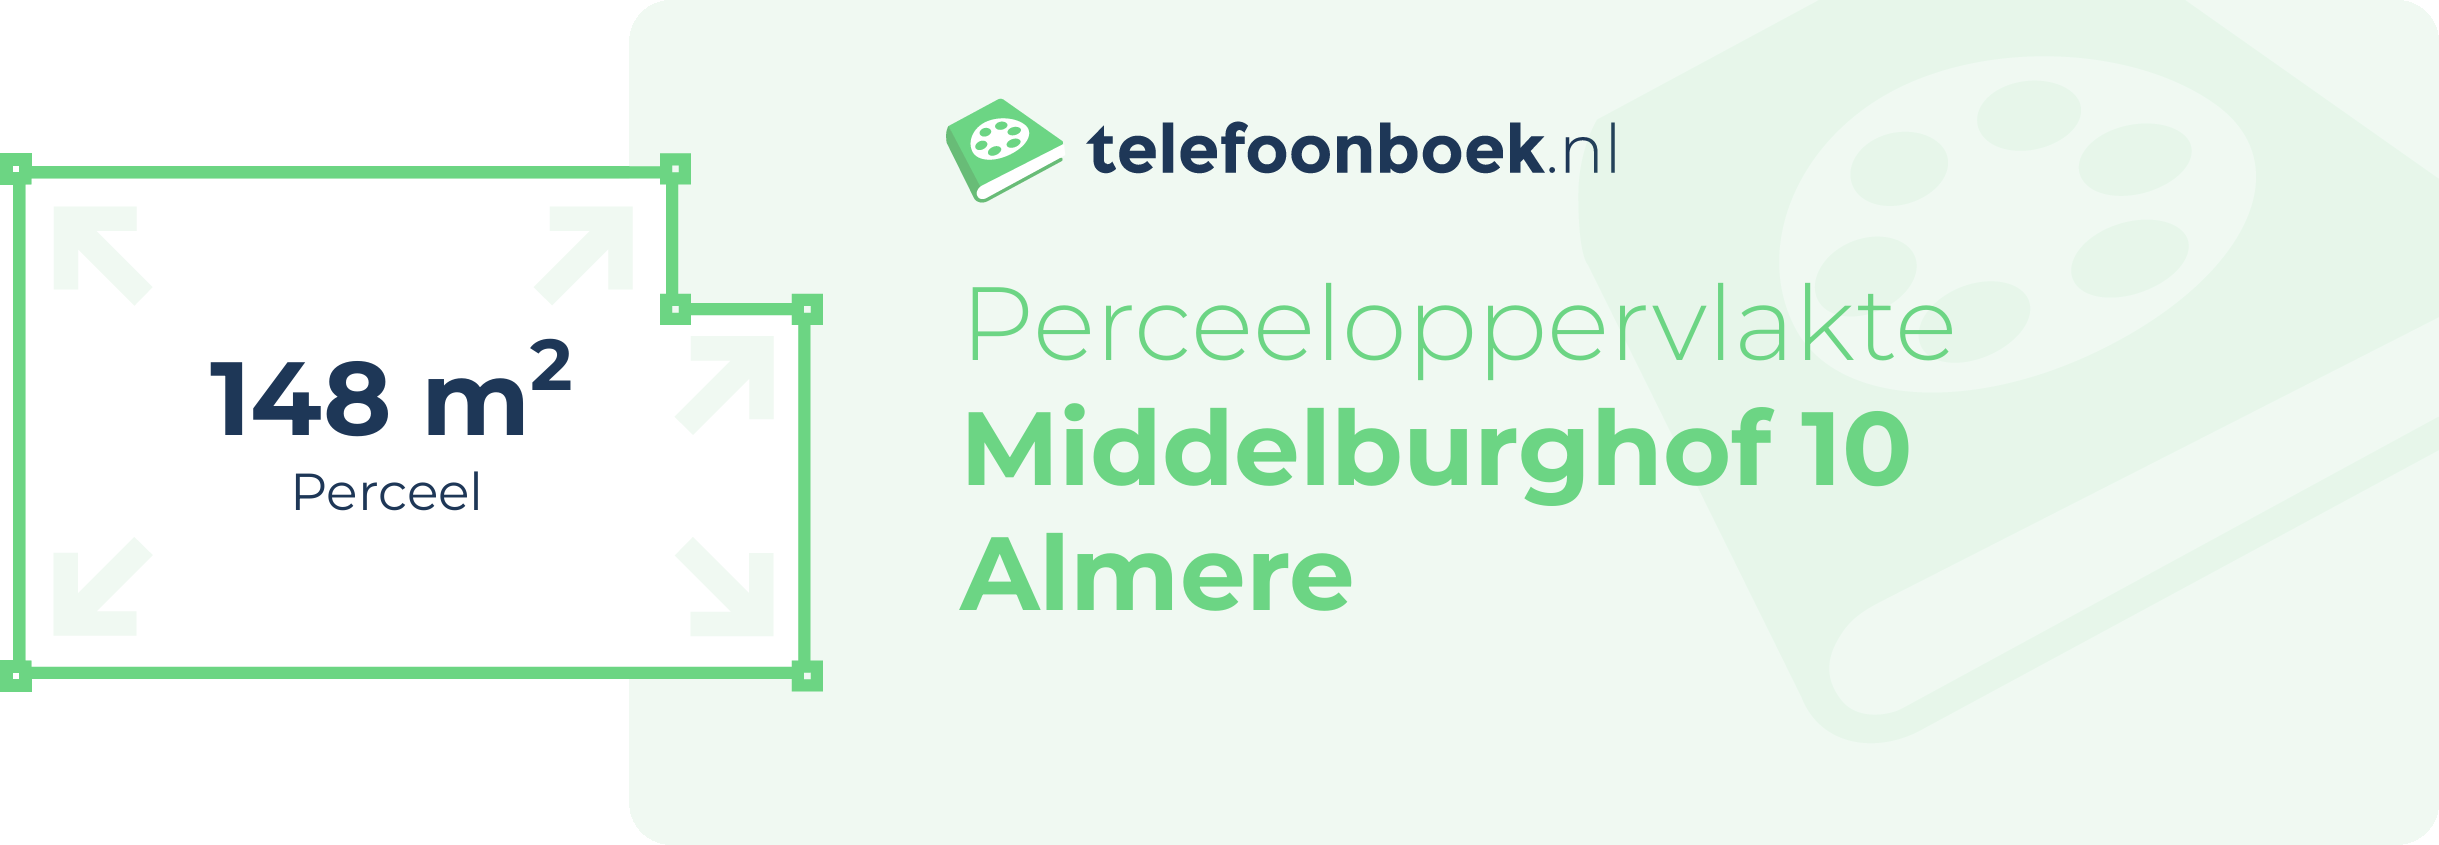 Perceeloppervlakte Middelburghof 10 Almere